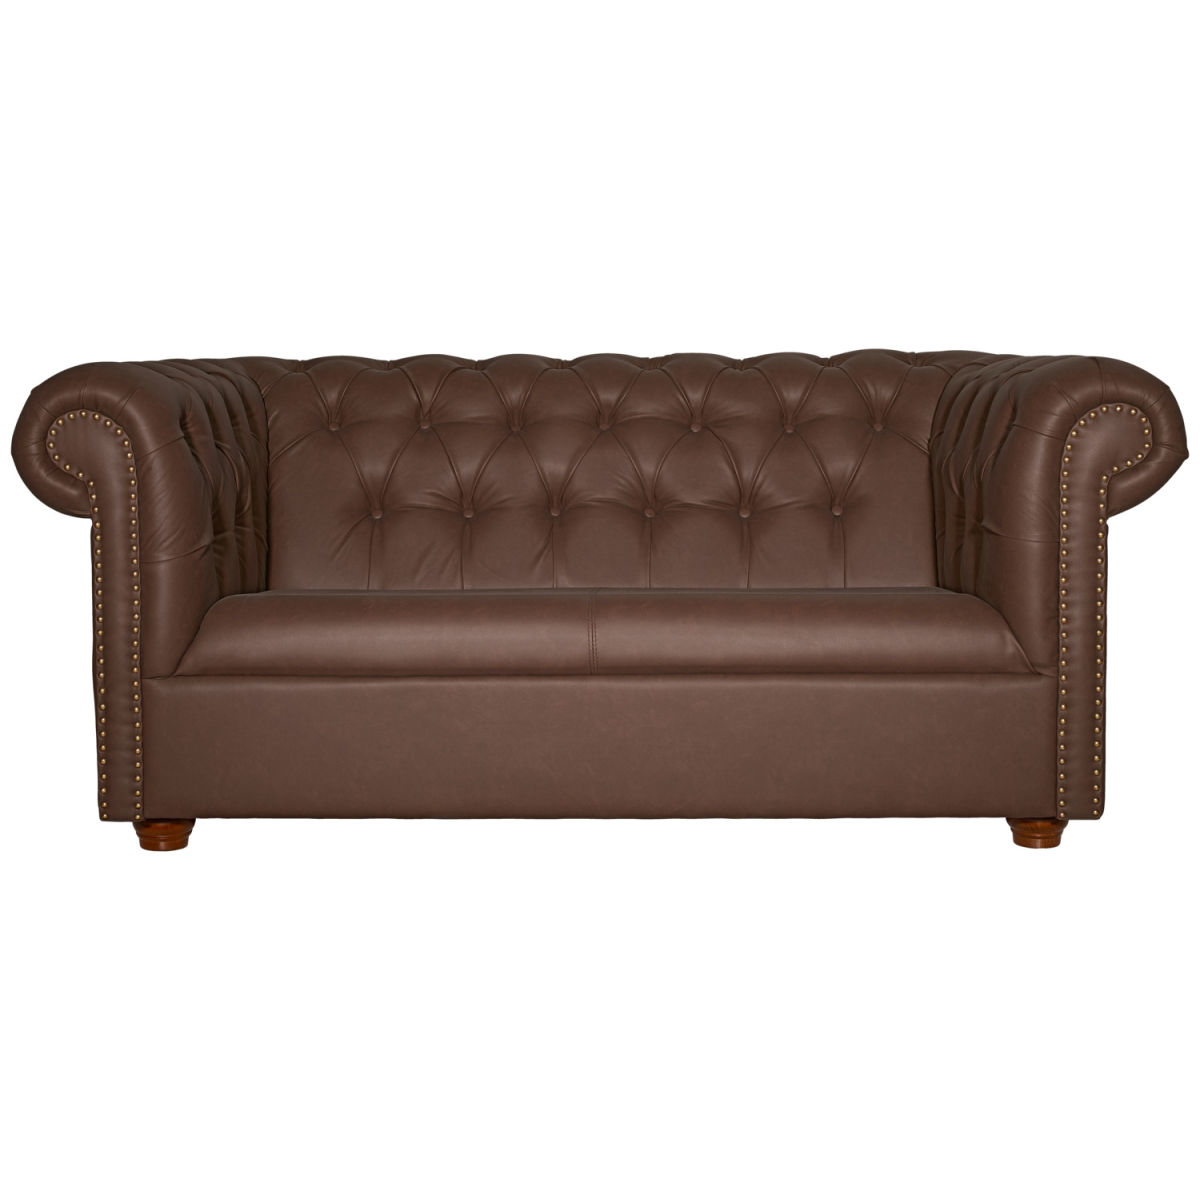 Vega 2-zits sofa Chesterfield incl. poten; 167x97x72.5 cm (BxDxH); zitting bruin, frame bruin